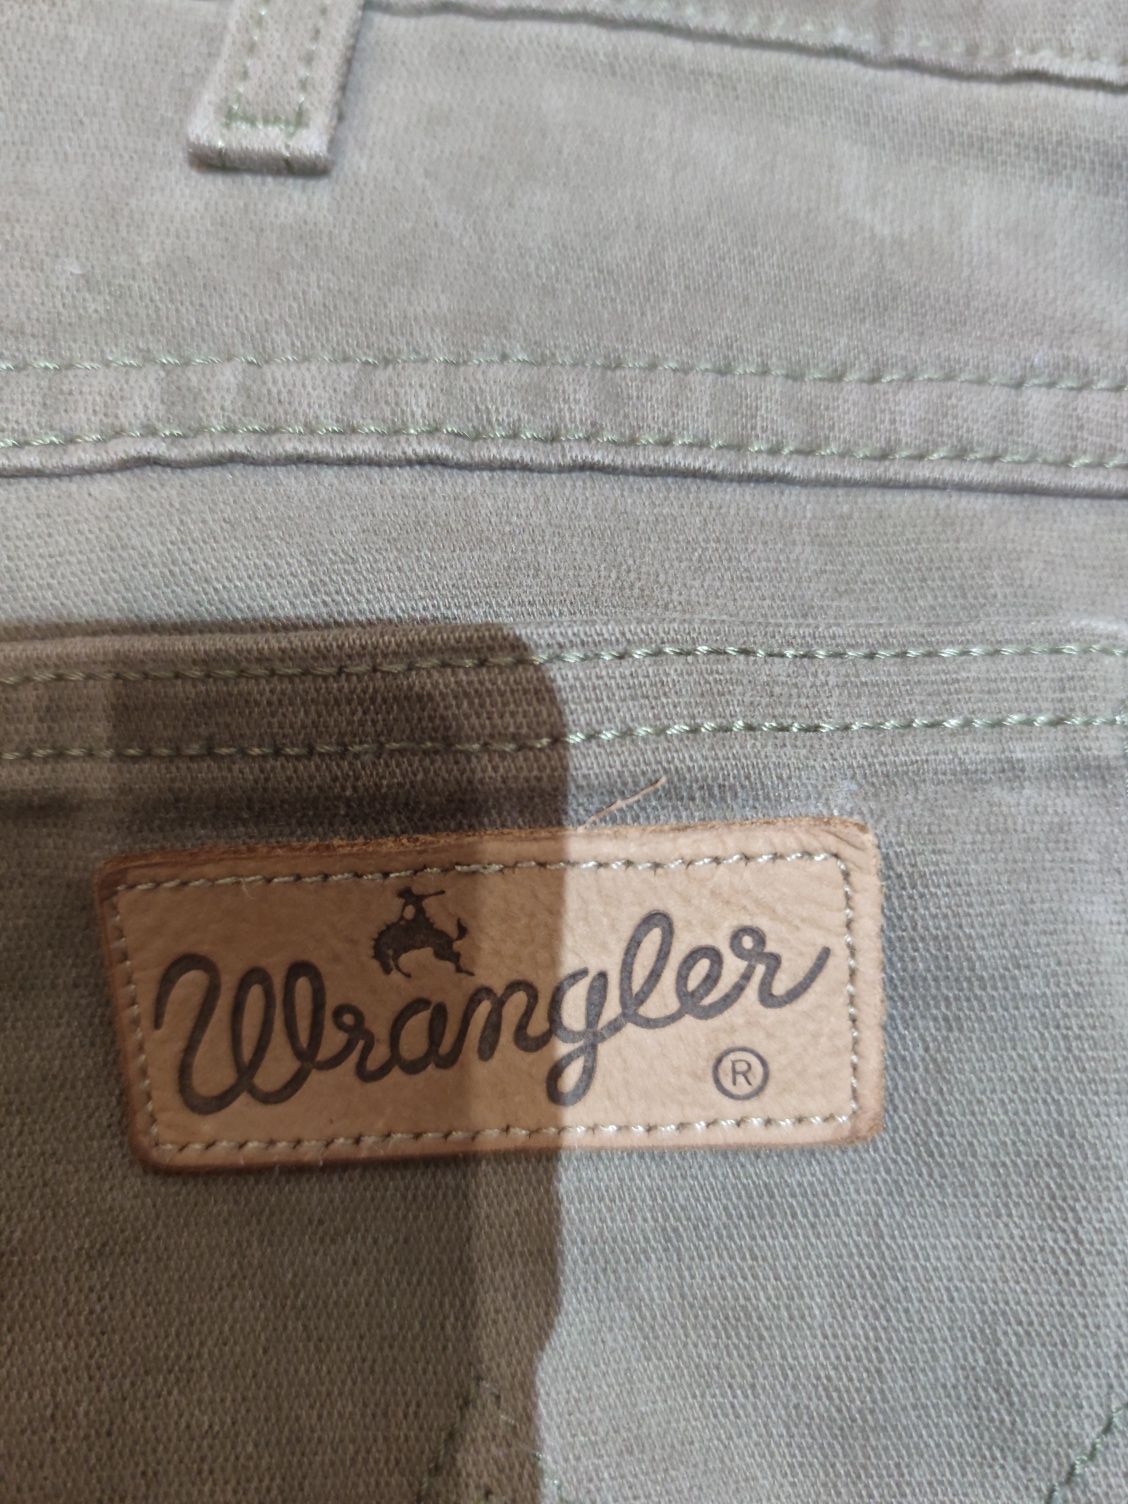 Spodnie męskie firmy Wrangler